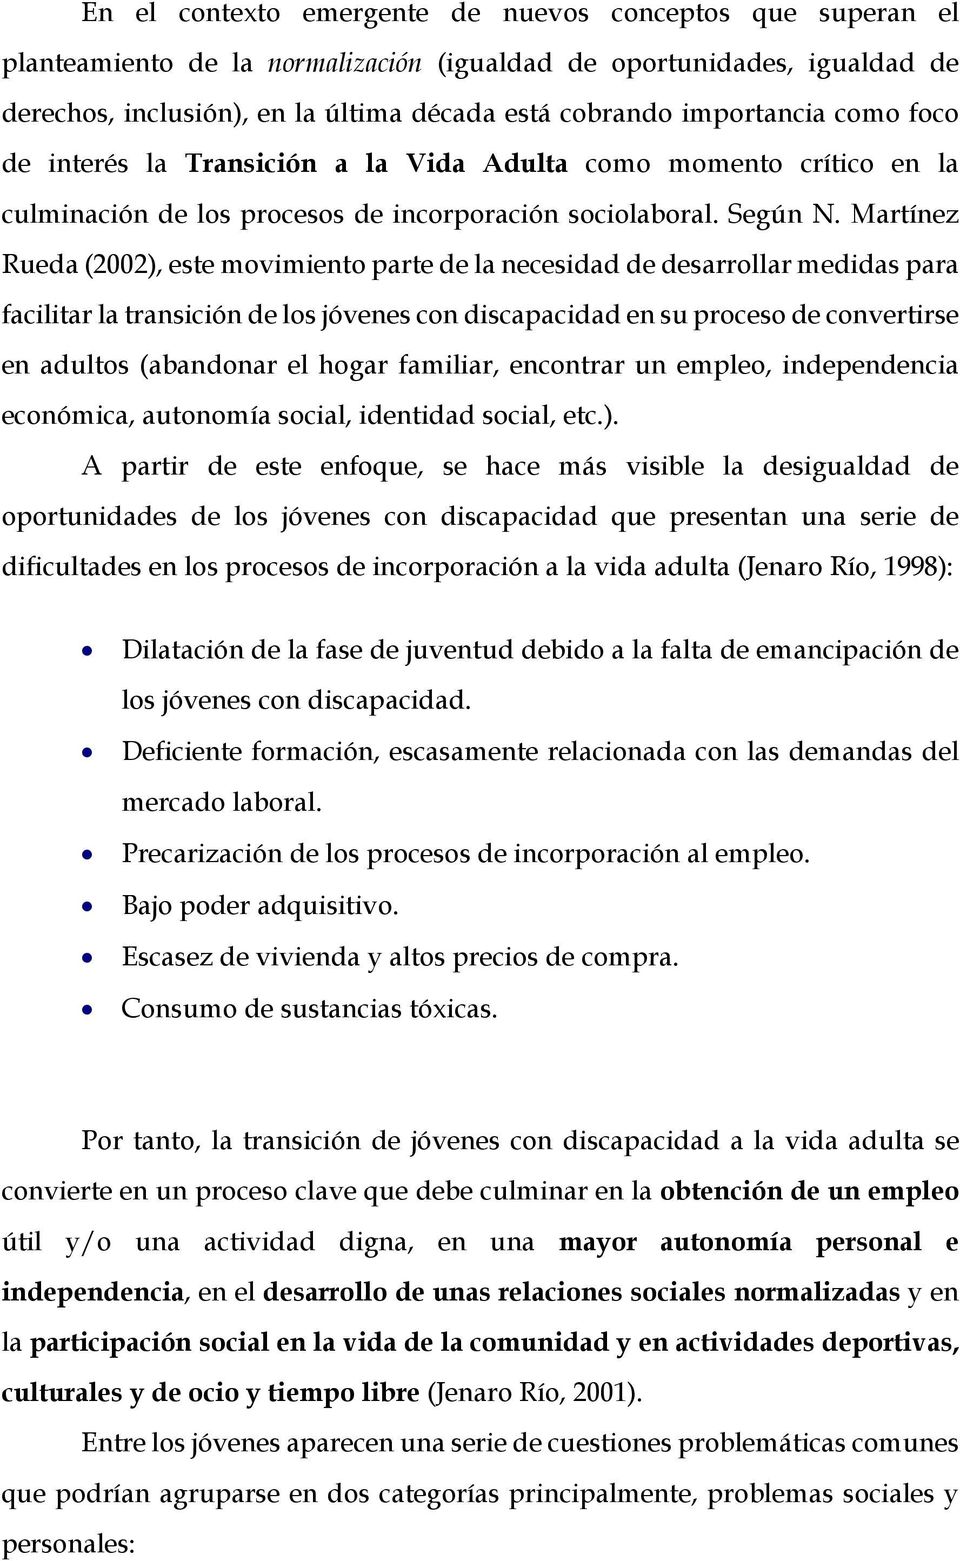 Martínez Rueda (2002), este movimiento parte de la necesidad de desarrollar medidas para facilitar la transición de los jóvenes con discapacidad en su proceso de convertirse en adultos (abandonar el